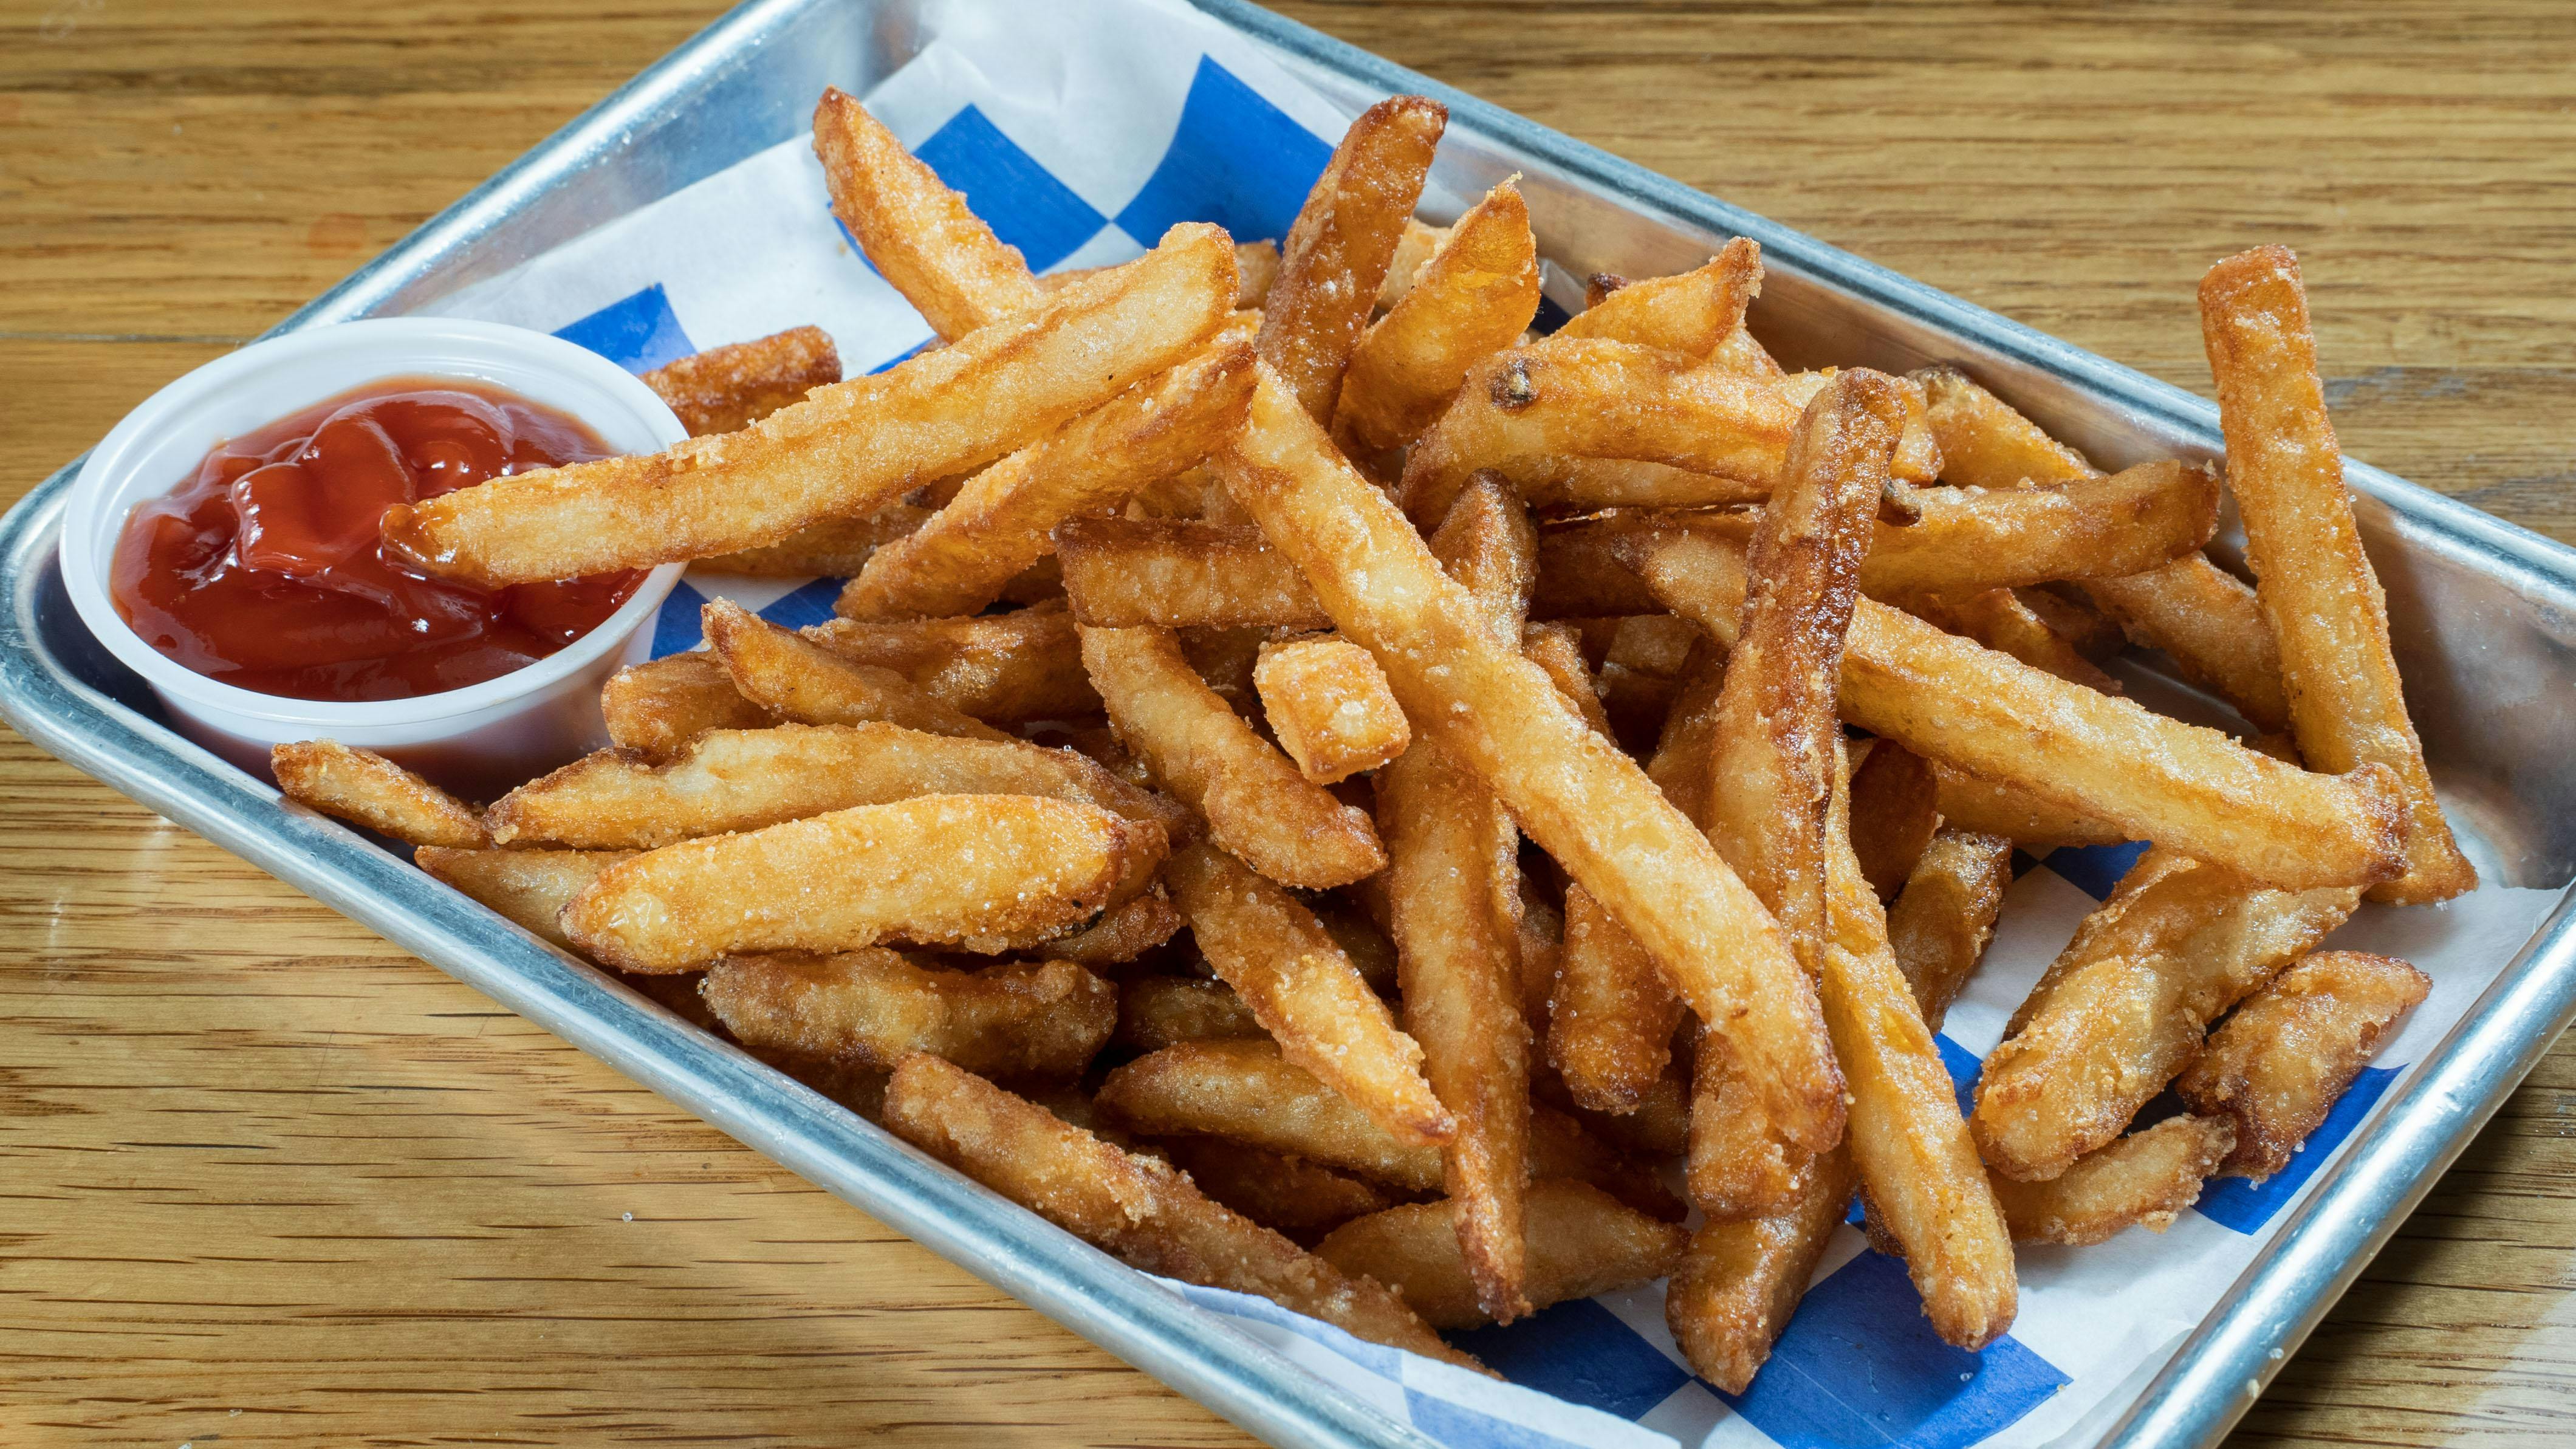 Fries from Austin Chicken Sandwich - Burnet Rd in Austin, TX